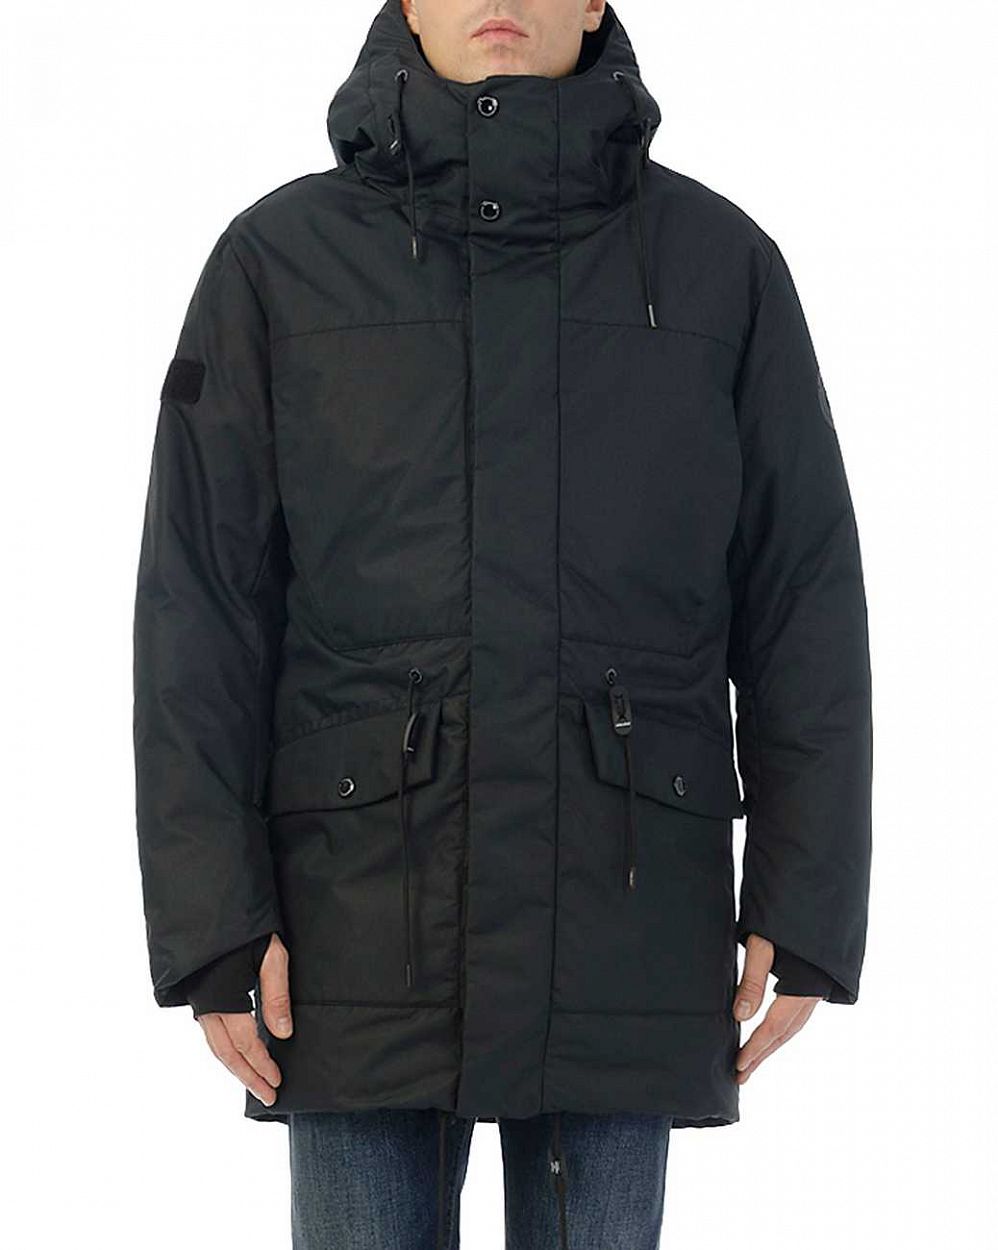 Куртка мужская зимняя водонепроницаемая на мембране Reloaded ST 3 Dark Navy отзывы